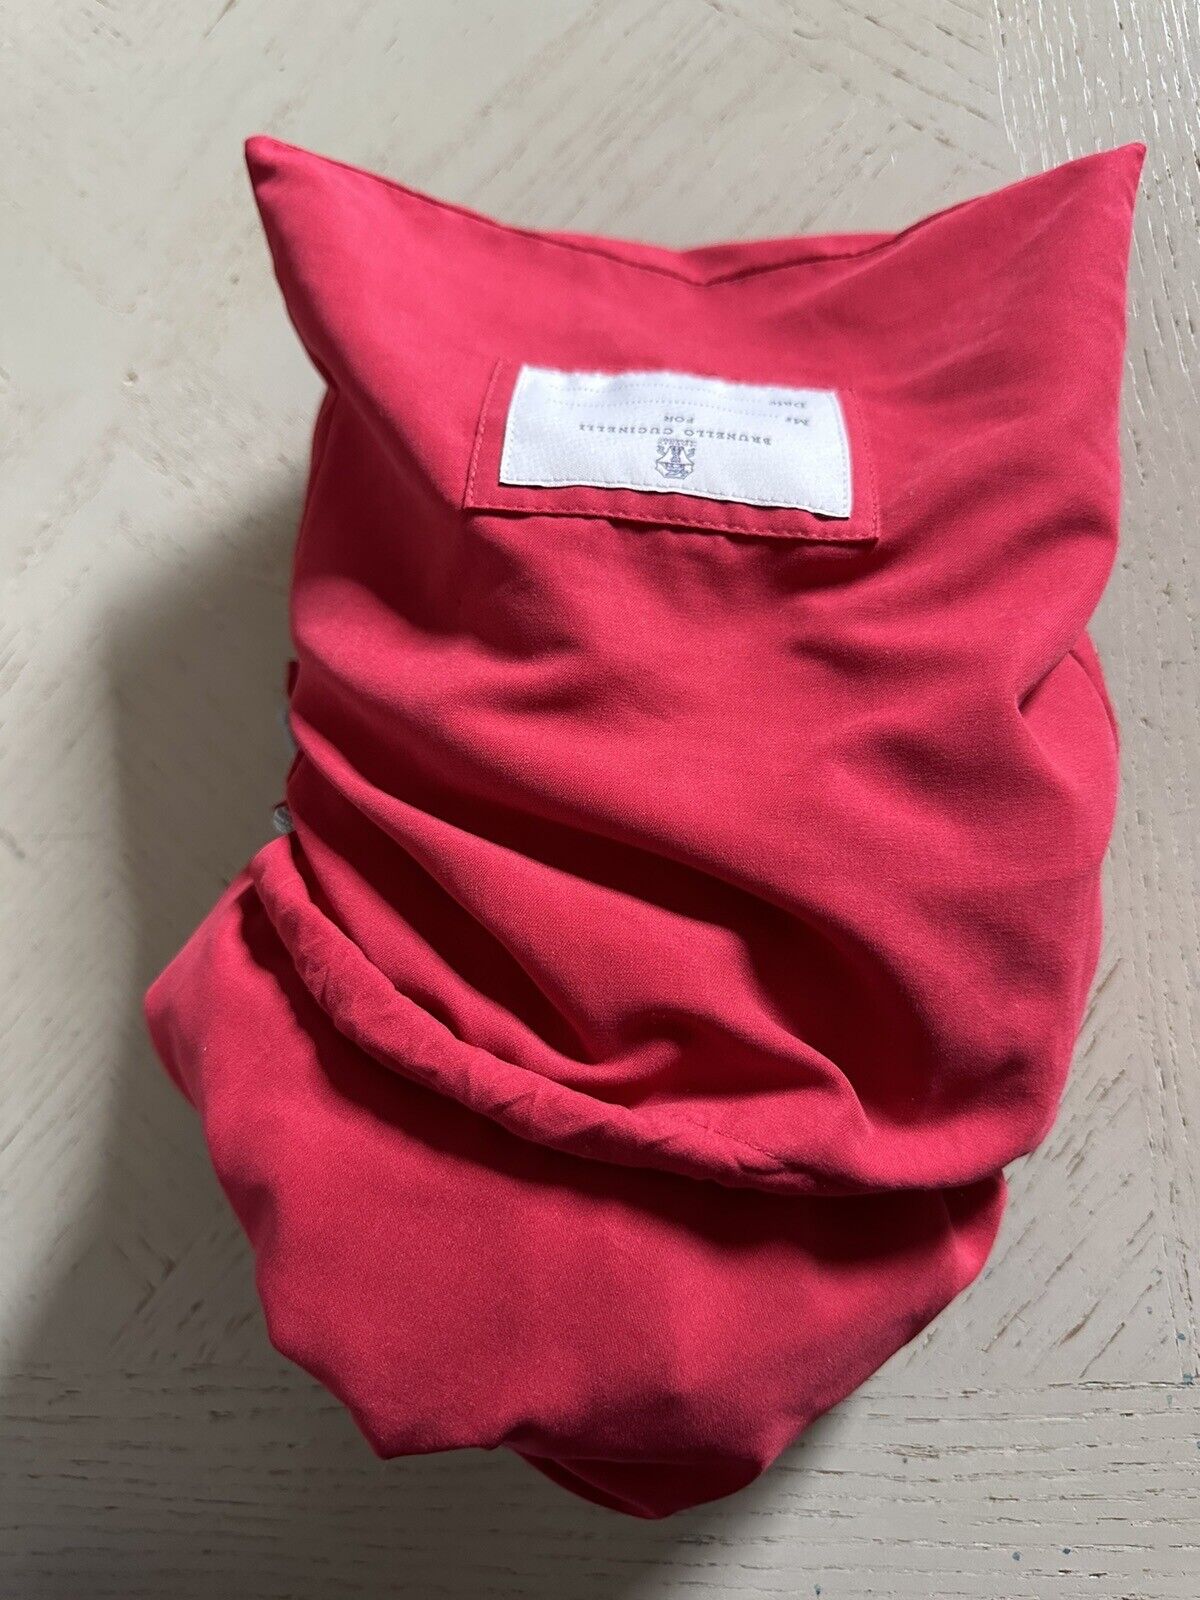 NWT $550 Brunello Cucinelli Мужчины Купальники Короткие Цвета Красный M Италия